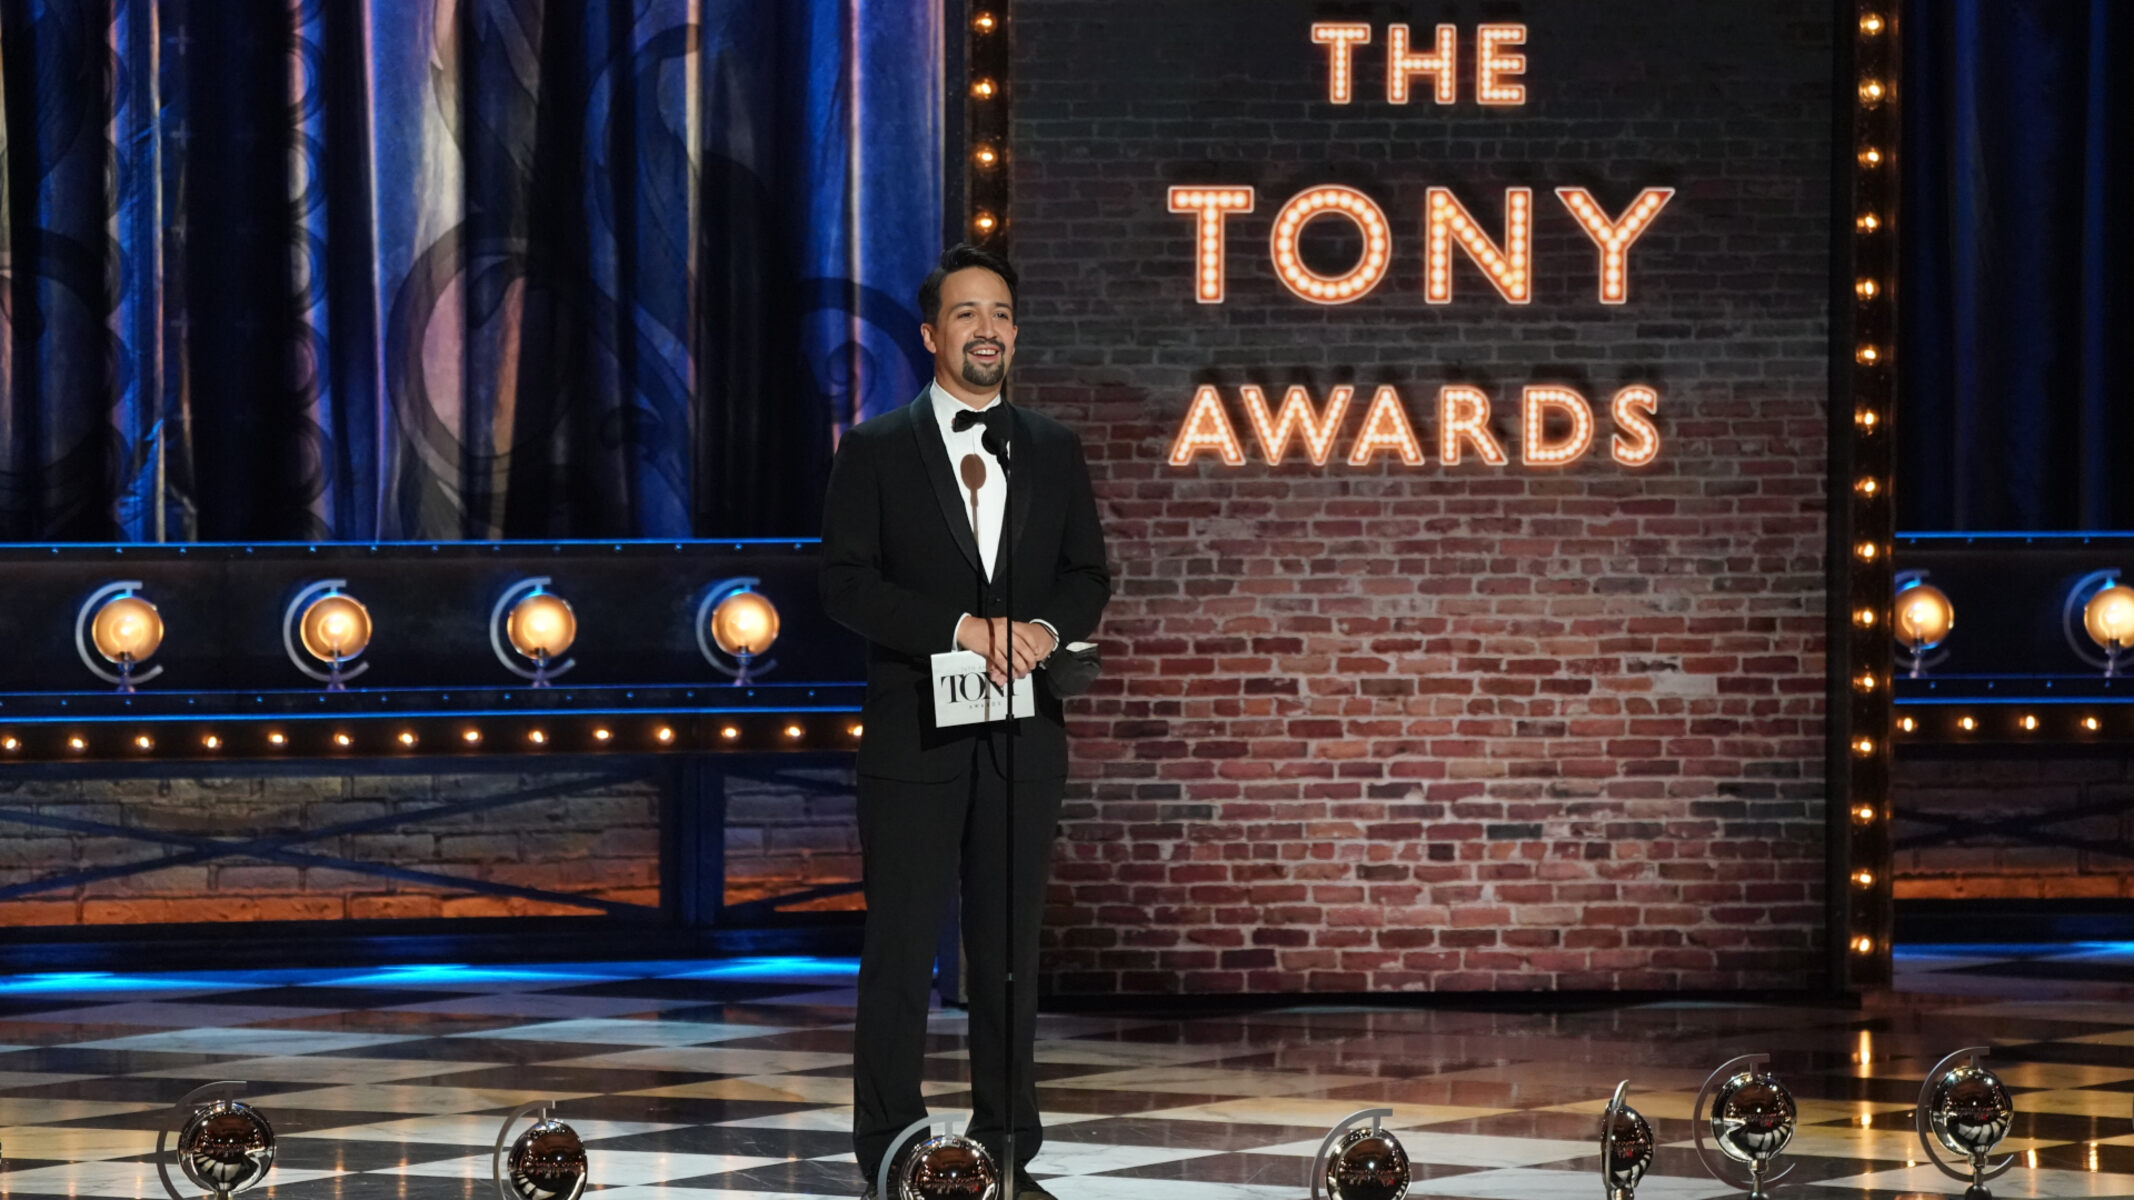 How To Watch Tony Awards 2022